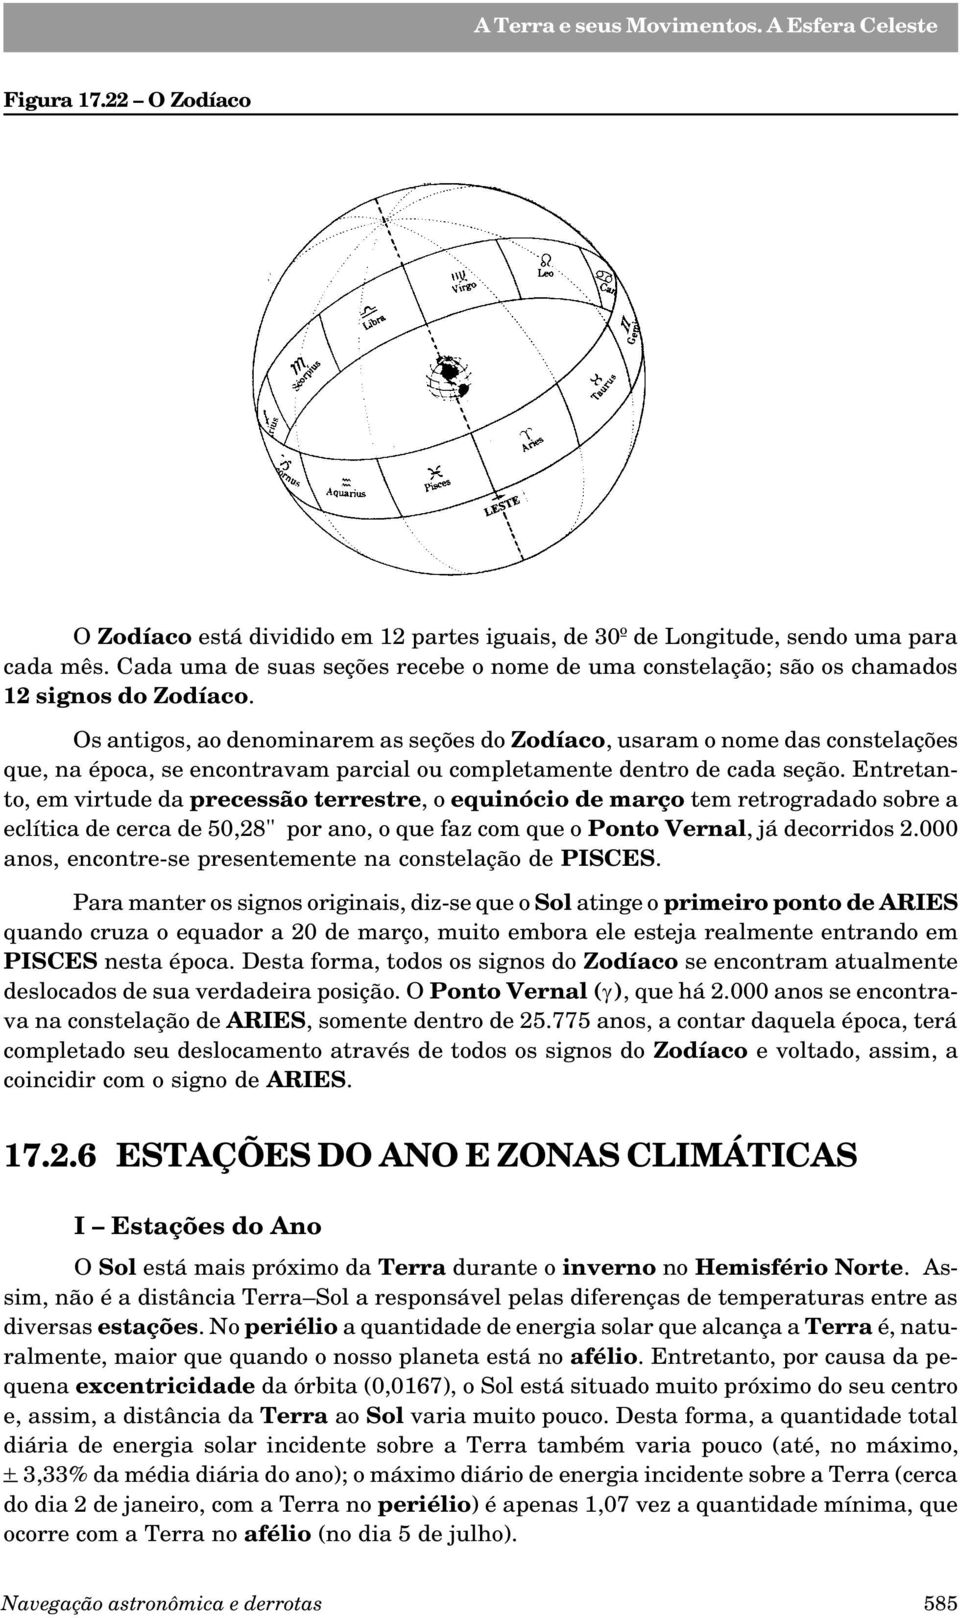 Os antigos, ao denominarem as seções do Zodíaco, usaram o nome das constelações que, na época, se encontravam parcial ou completamente dentro de cada seção.